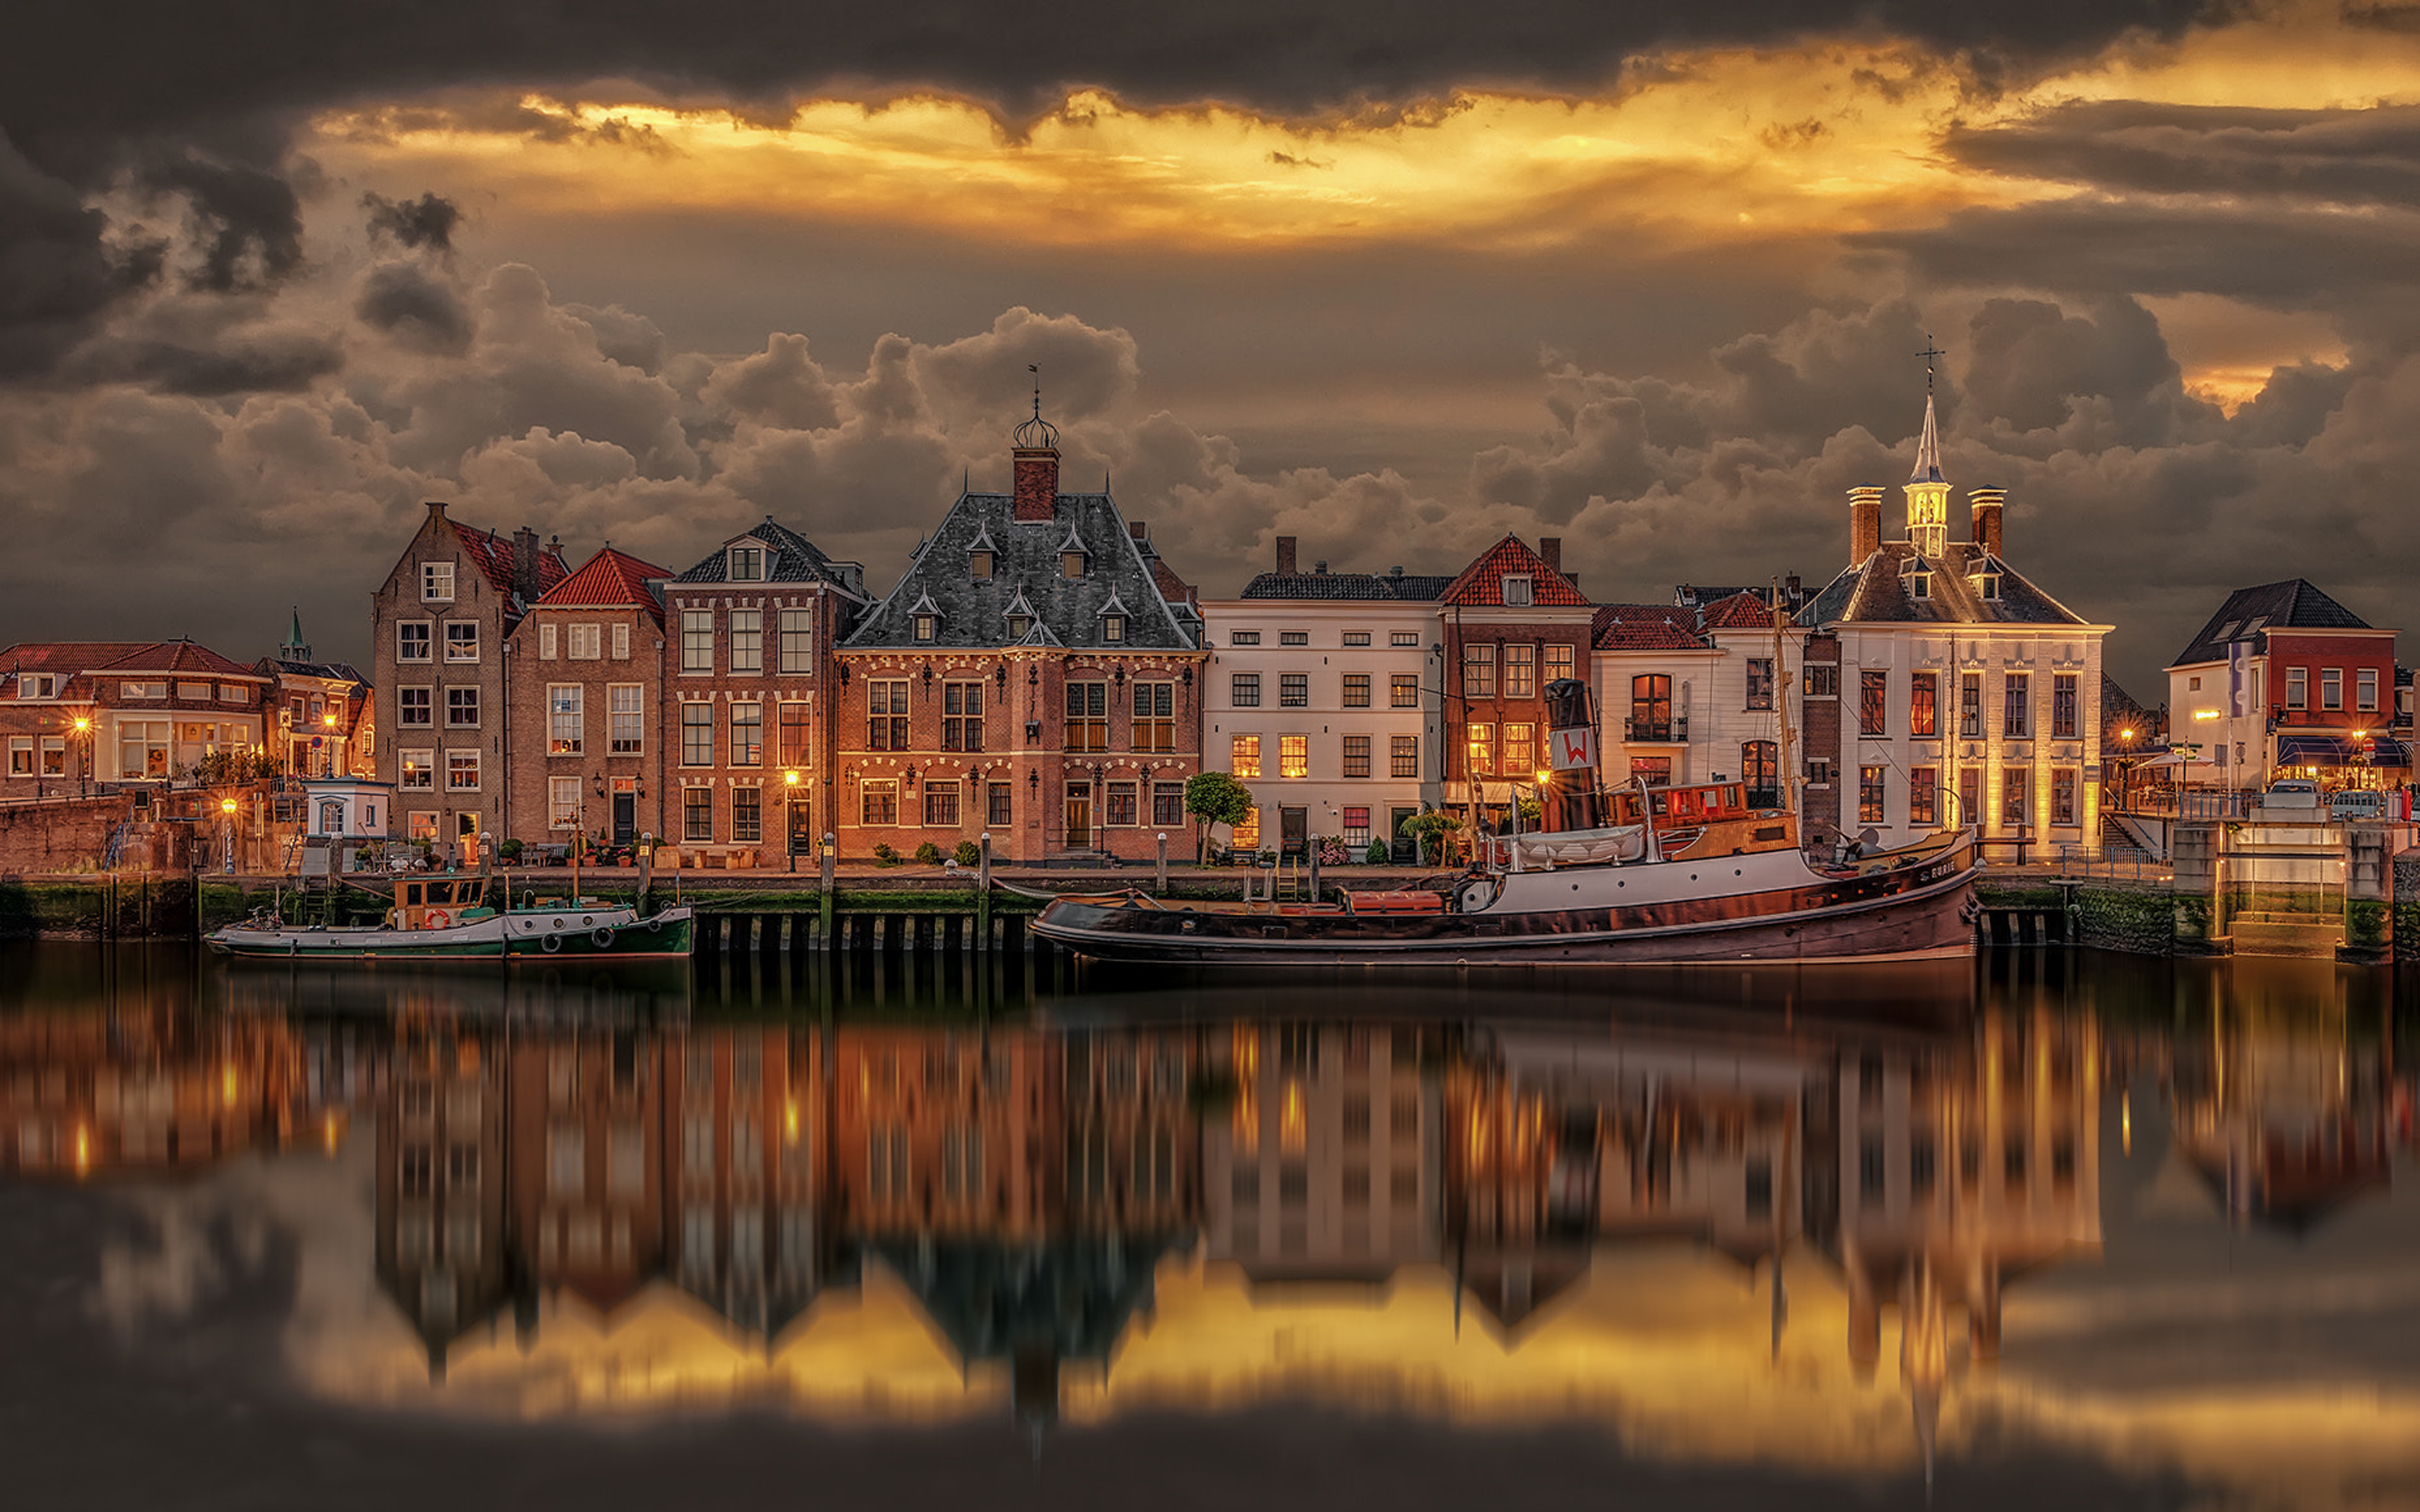 Maasslui ở Hà Lan được biết đến là một trong những cảng cũ lâu đời nhất thế giới. Hãy thưởng thức hình ảnh tuyệt đẹp về phong cảnh cổ kính và những chiếc thuyền đánh cá nhỏ bé trôi dạt trong sống động.